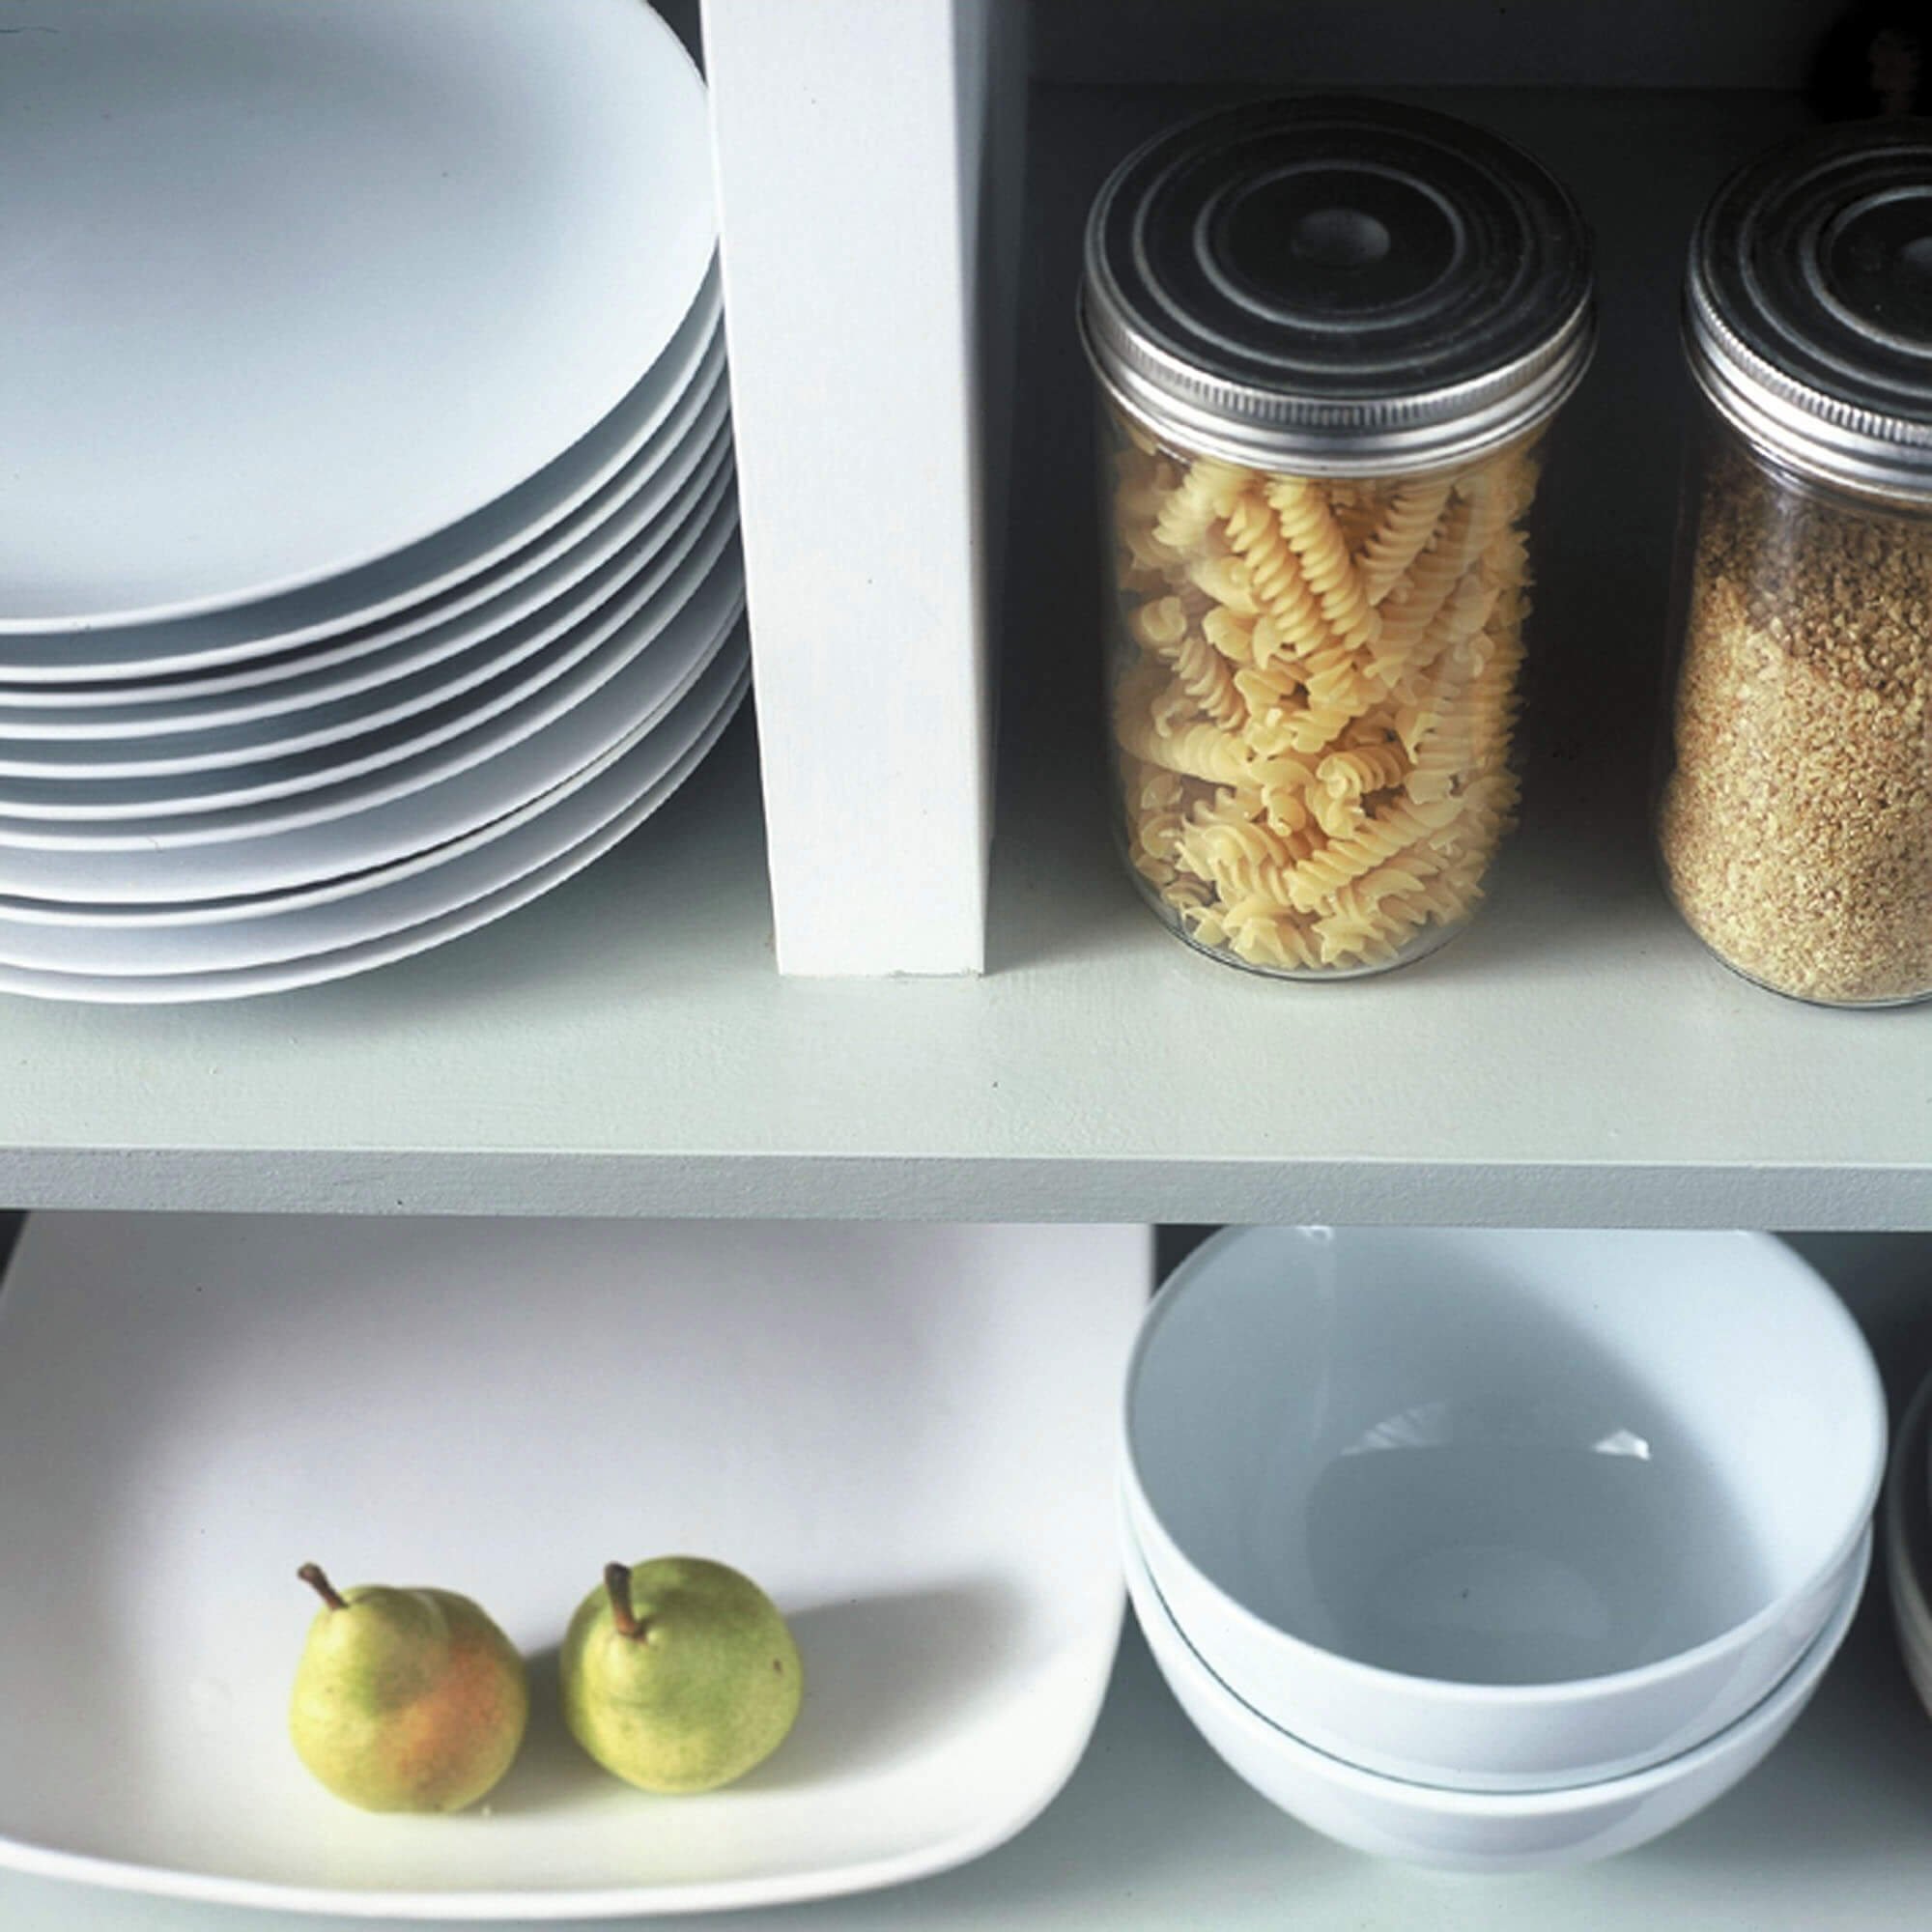 co-op-housing-redesign-kitchen-storage-pasta-pears.jpg